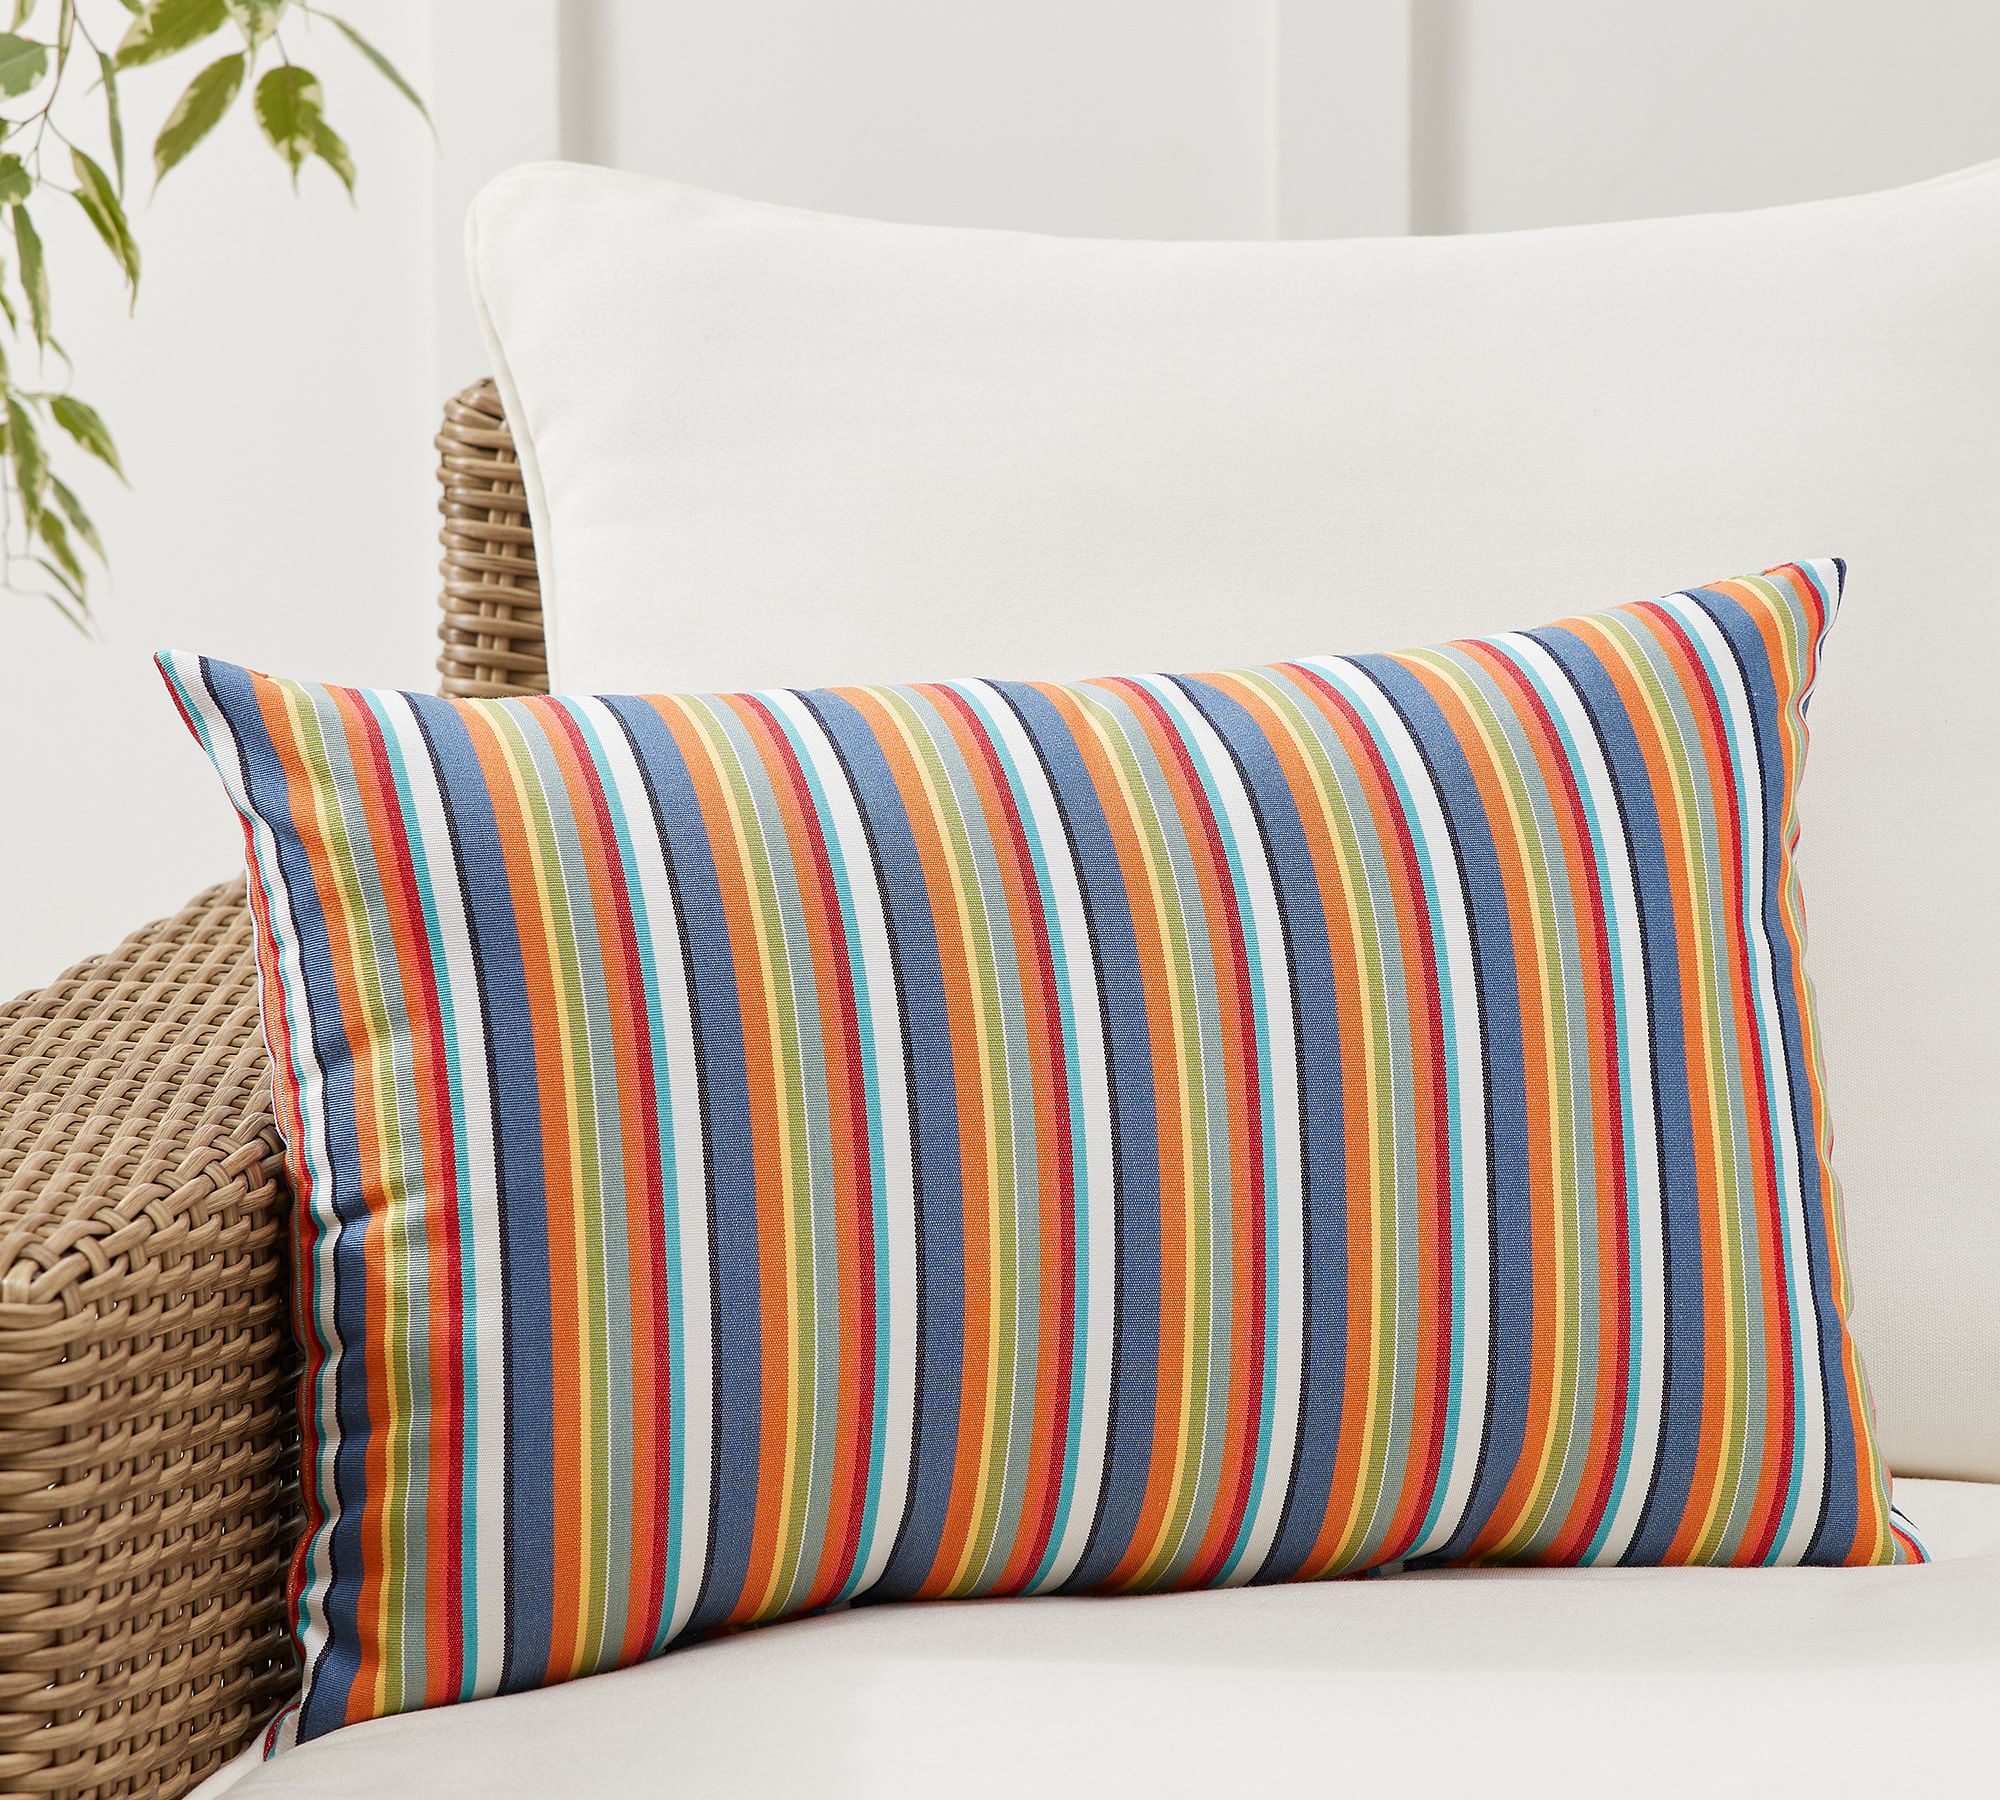 Sunbrella® Newport Striped Outdoor Lumbar Pillow